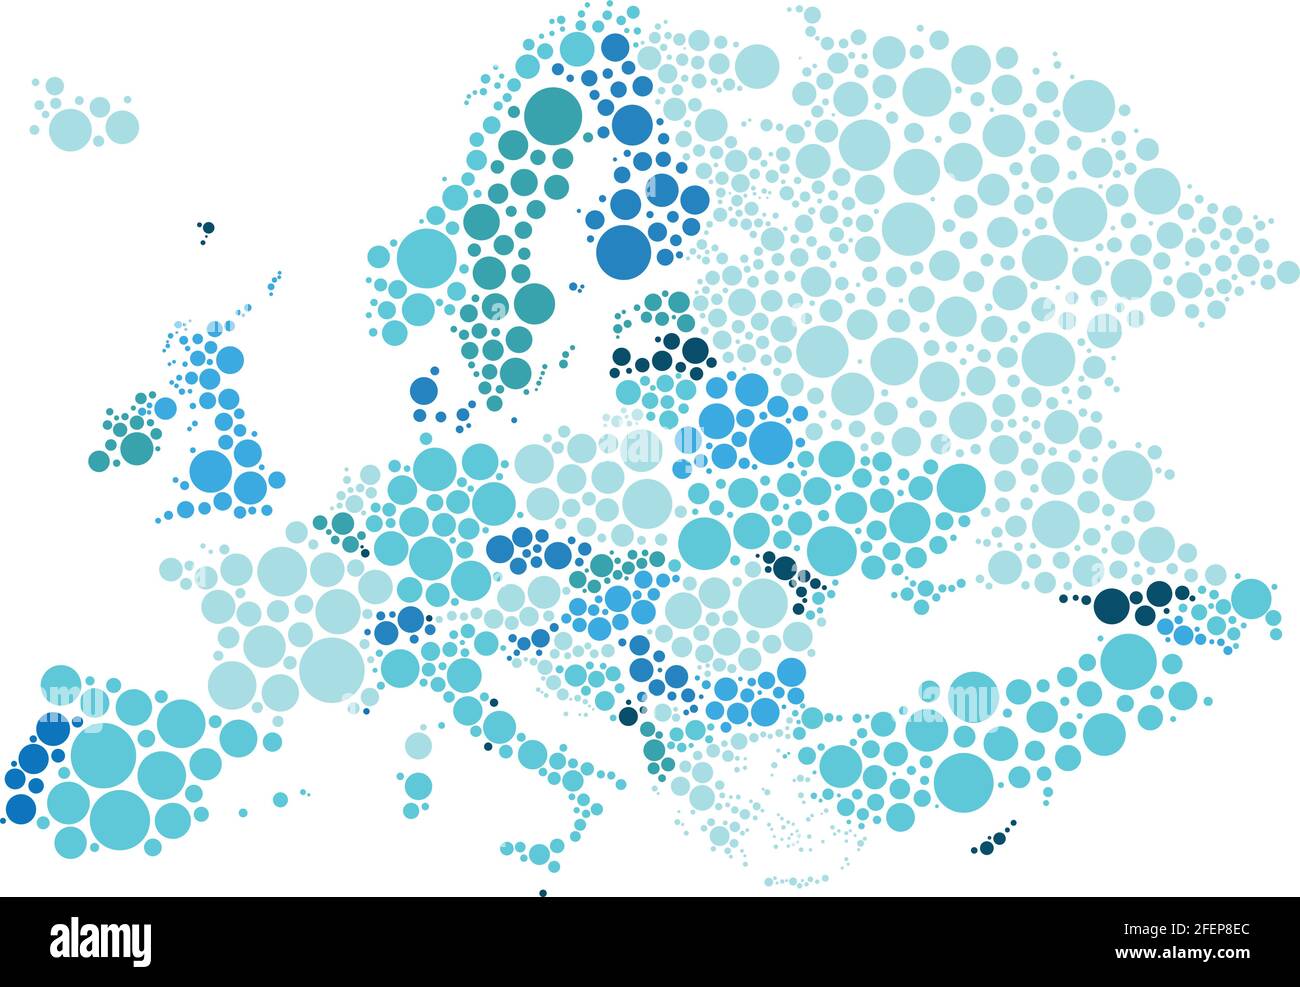 Illustration vectorielle de la carte politique de l'Europe conçue avec différentes tailles et tonalités de points bleus. Illustration de Vecteur